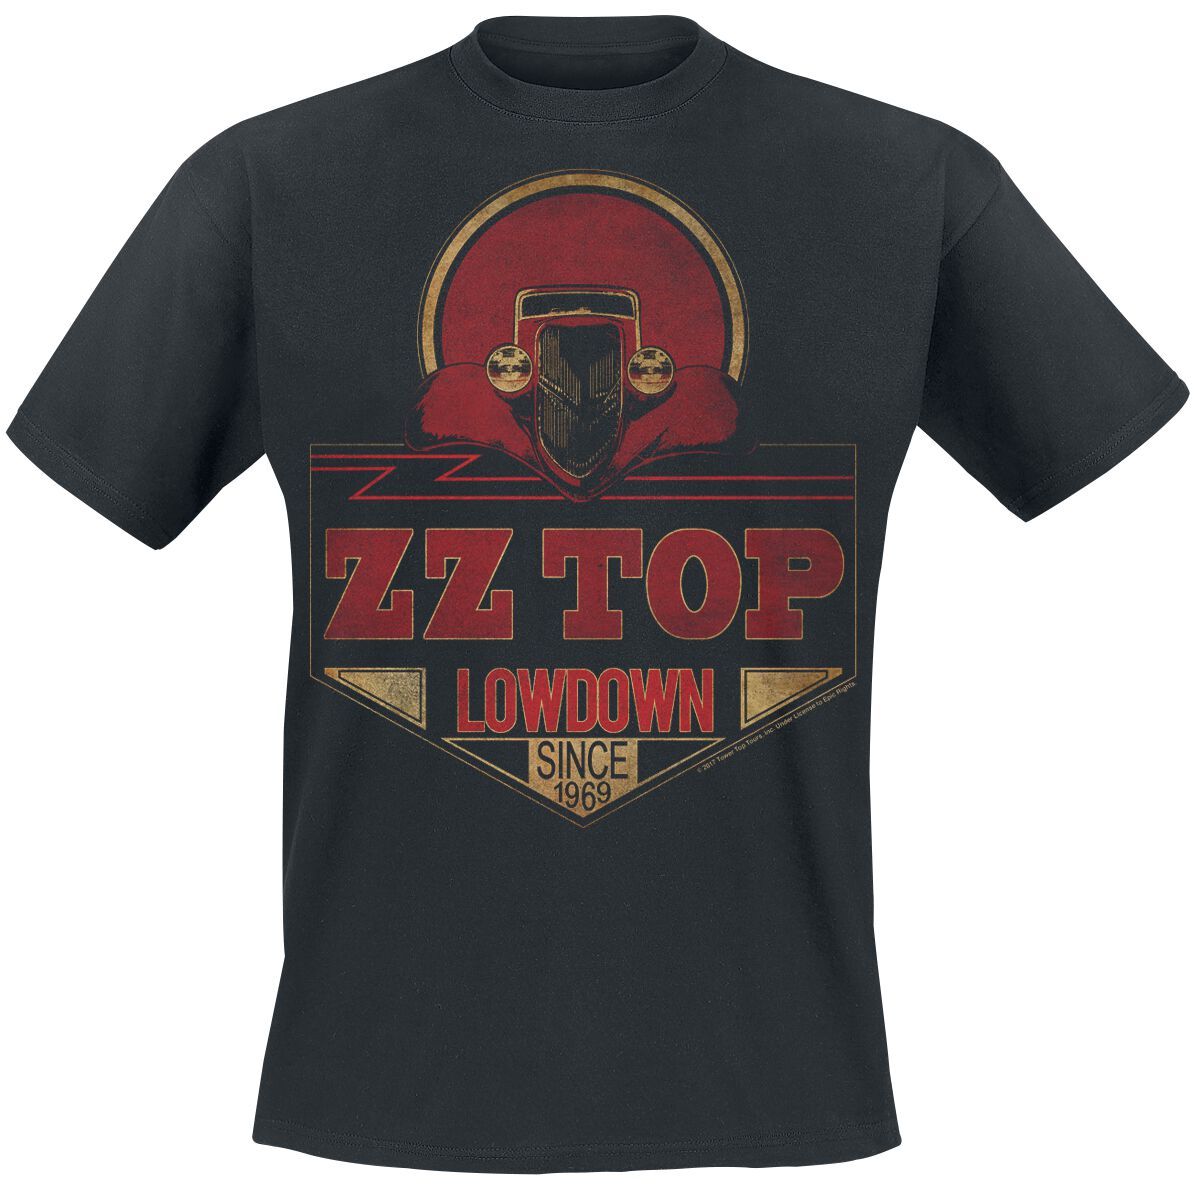 ZZ Top T-Shirt - Lowdown Since 1969 - S bis XXL - für Männer - Größe L - schwarz  - Lizenziertes Merchandise!